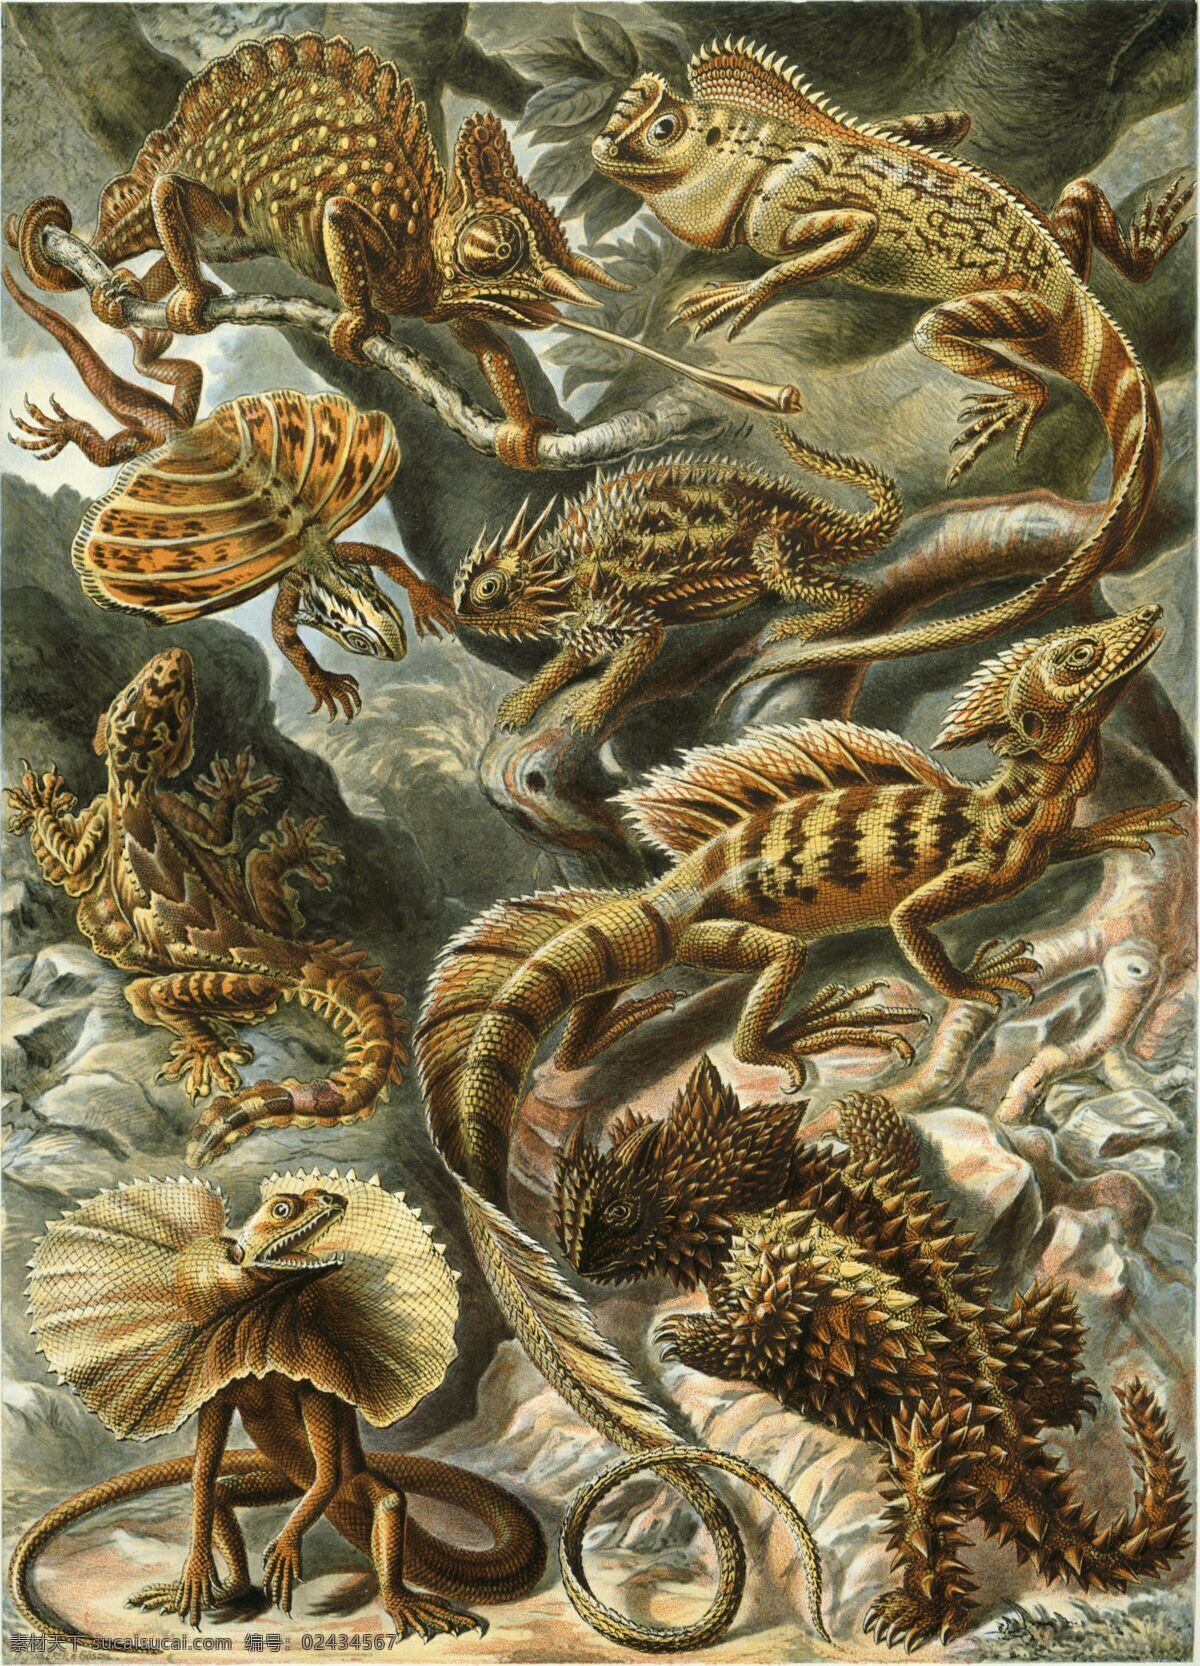 变色龙 古生物 生物草图 平版印刷 恩斯特海克尔 生物 素描 绘画书法 文化艺术